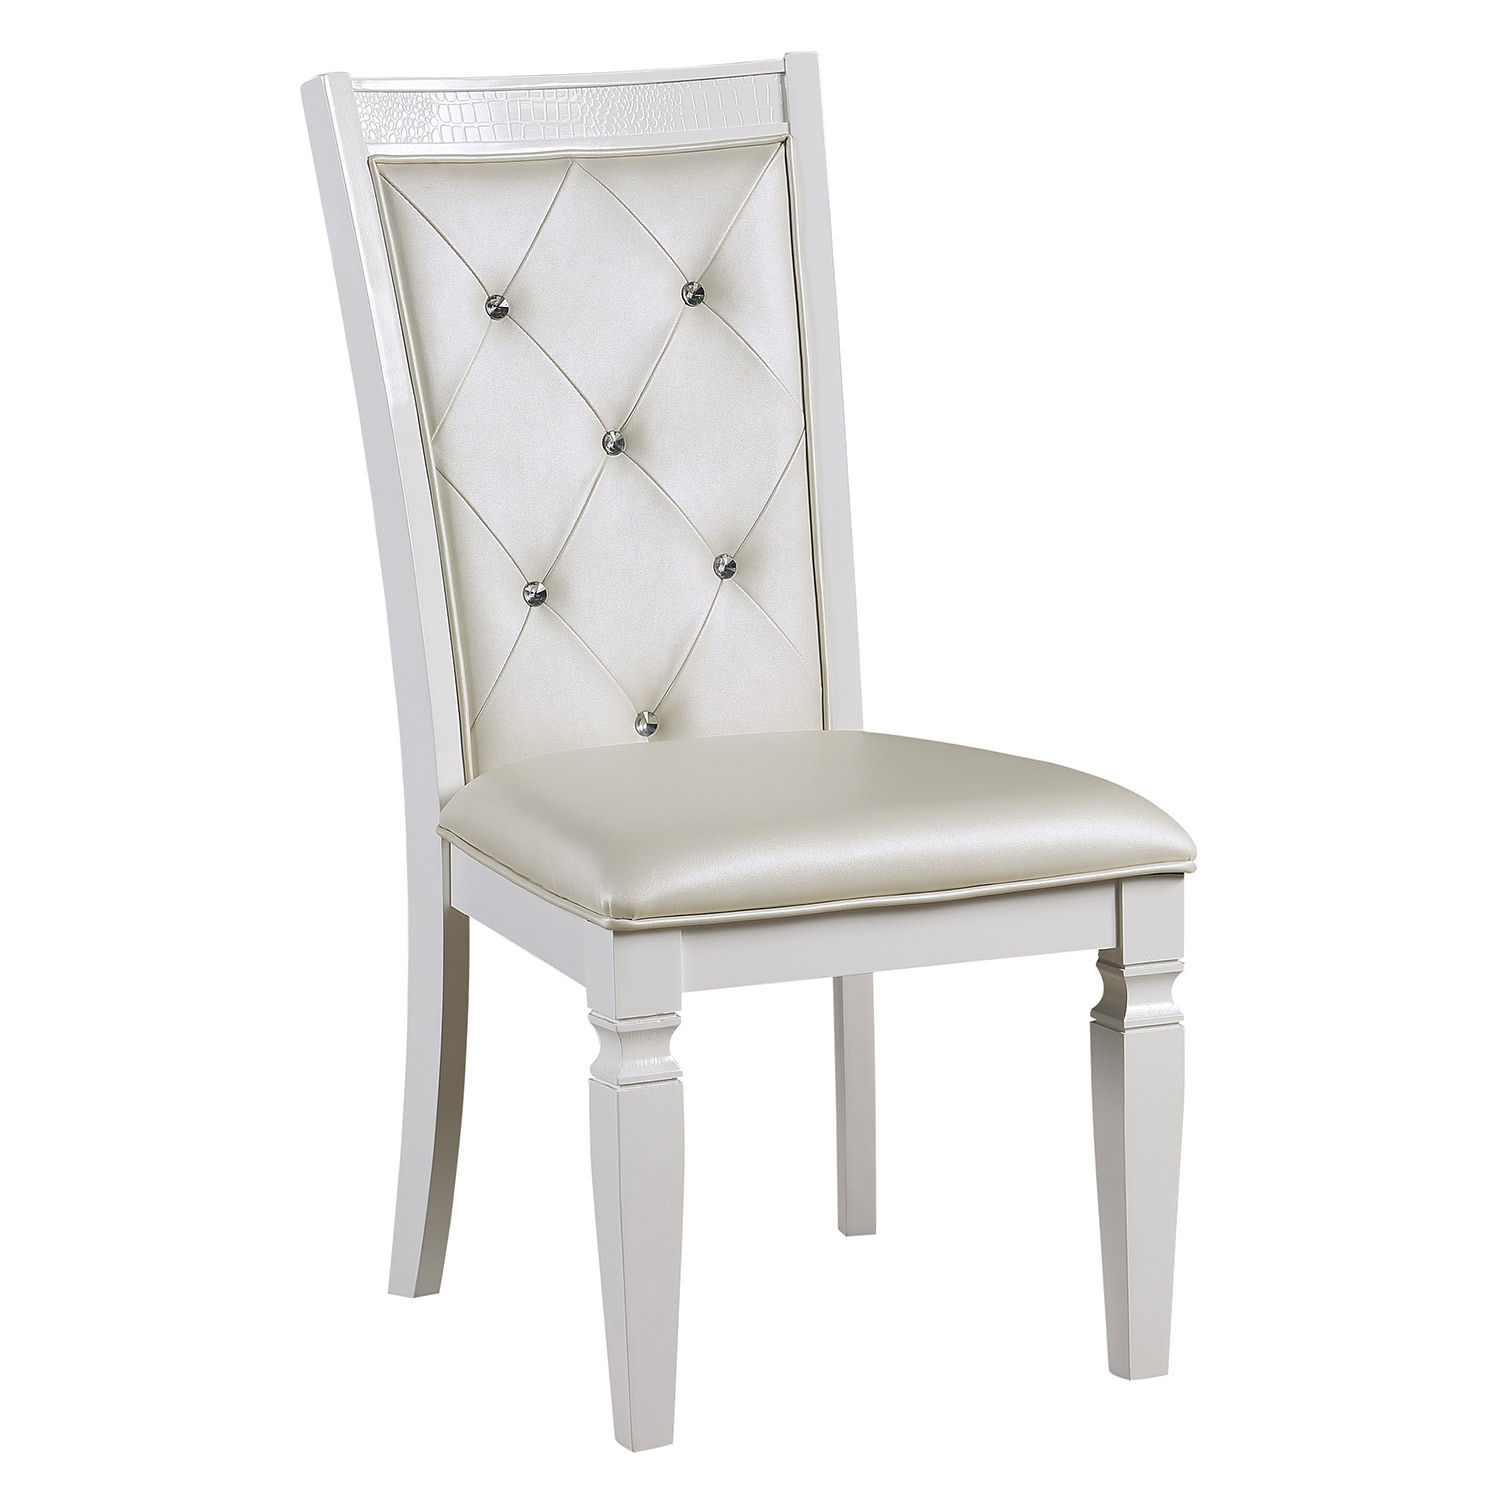 Homelegance Allura Side Chair - White Metallic